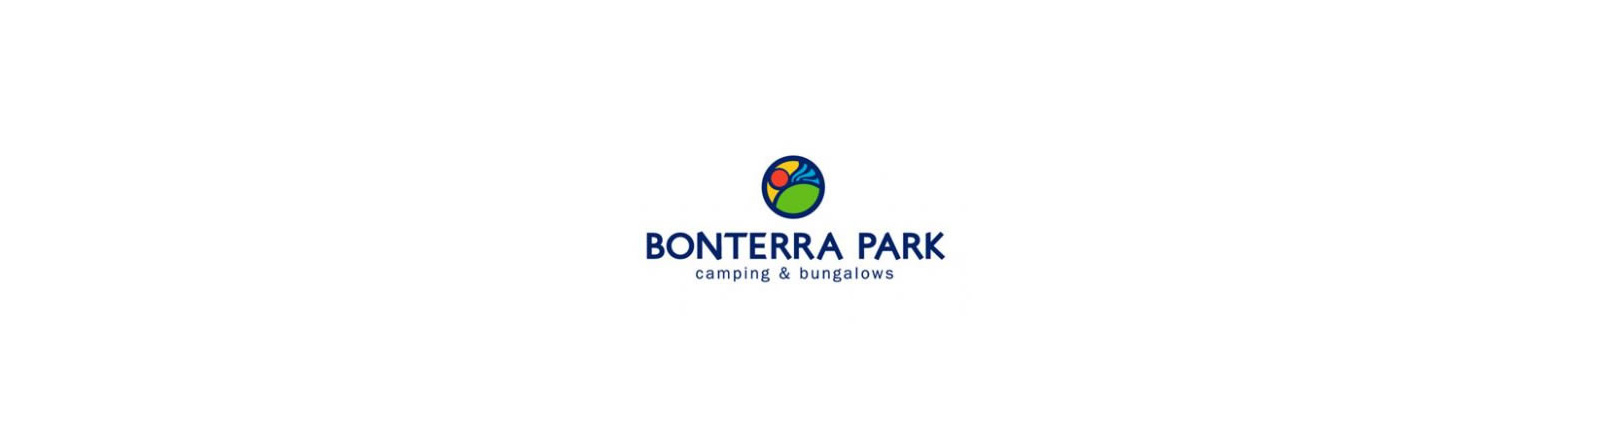 Bonterra Park